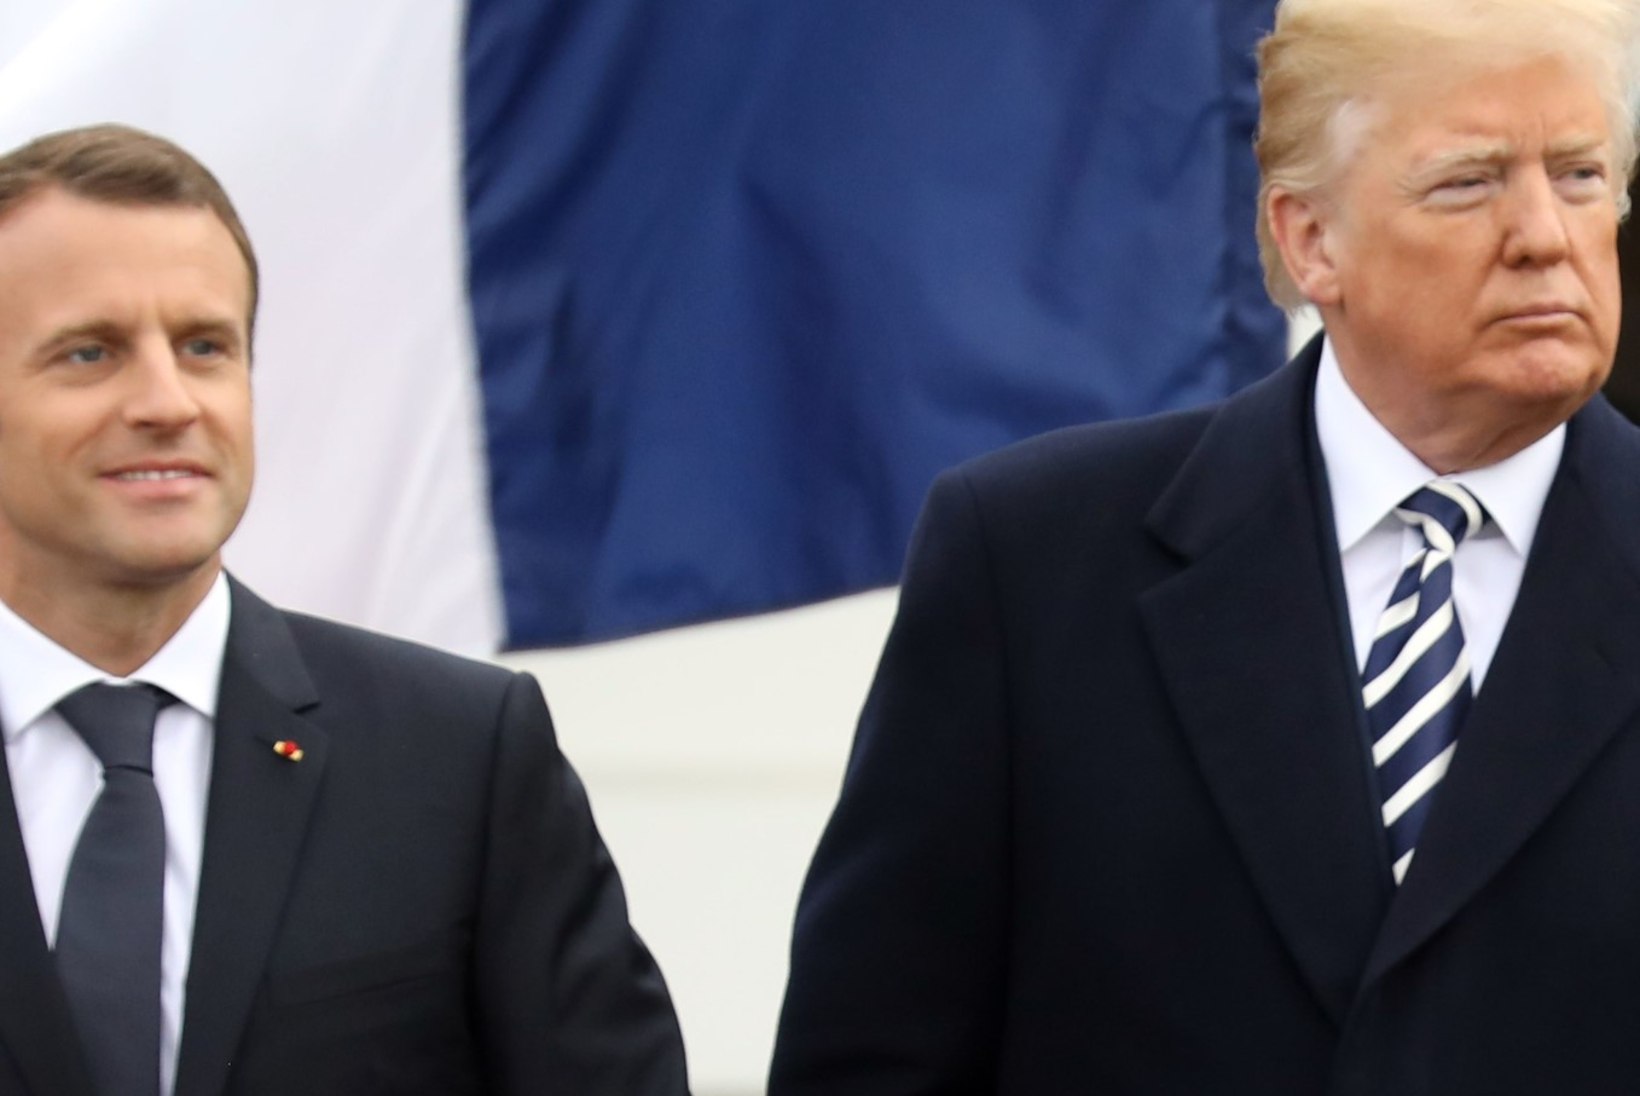 FOTOD | Trumpi ja Macroni lembehetked – kas osa diplomaatilisest strateegiast?